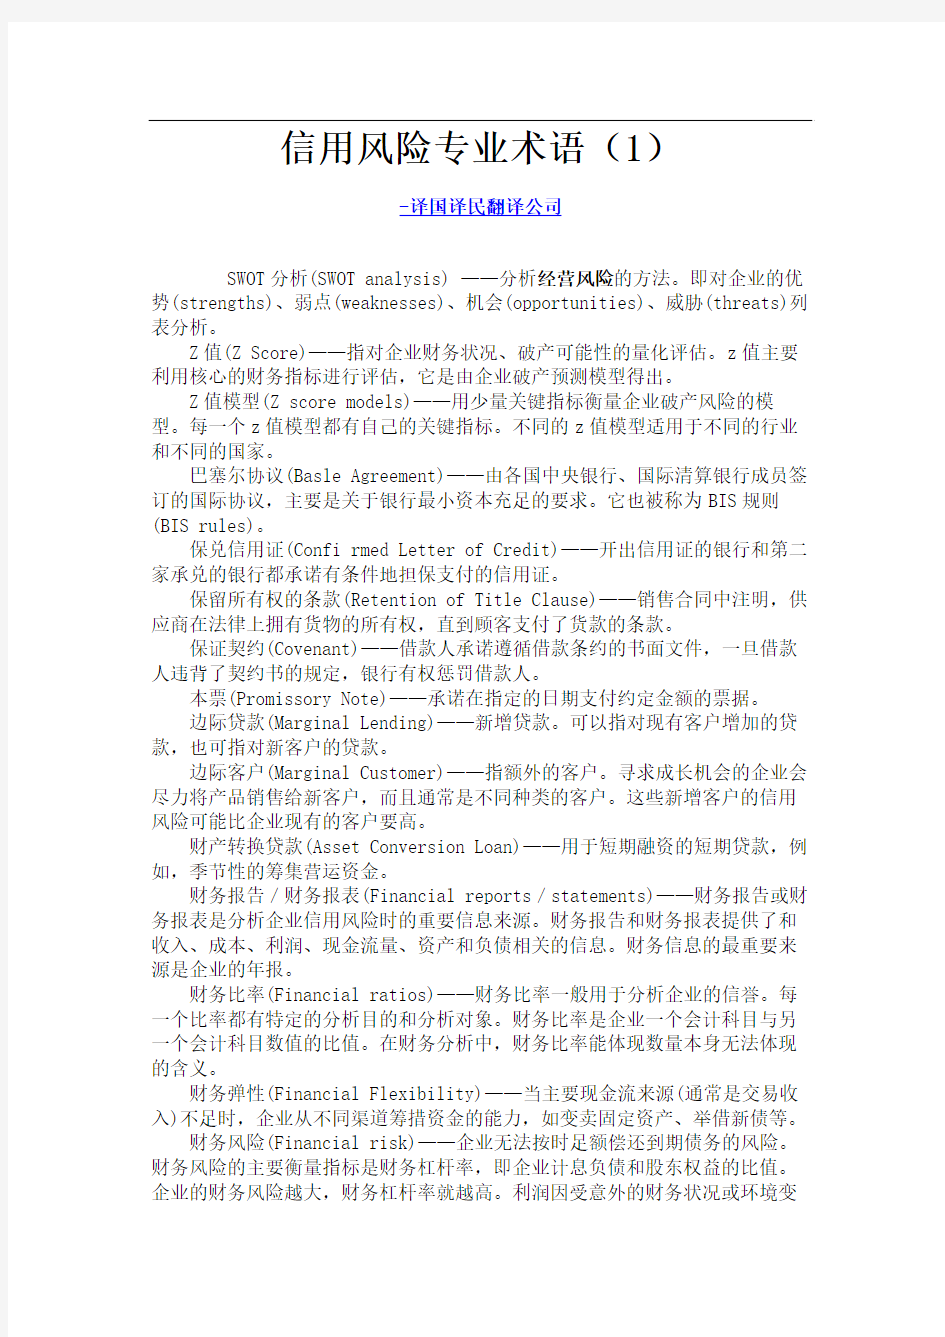 上海翻译公司信用风险专业术语(1)